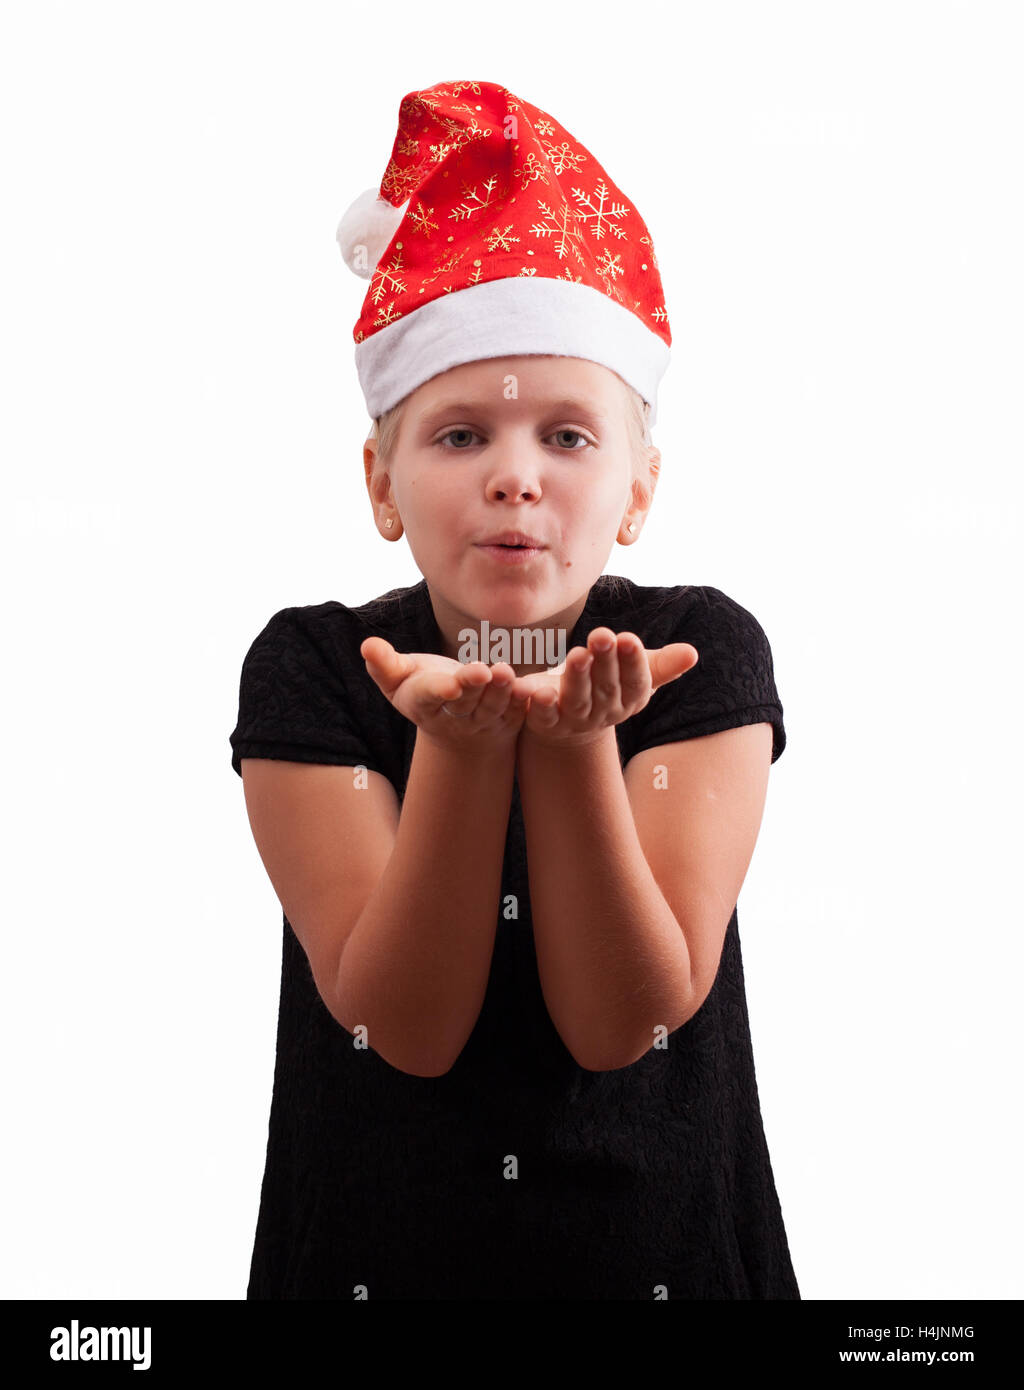 Girl in a red Christmas hat l'envoi d'un baiser Banque D'Images